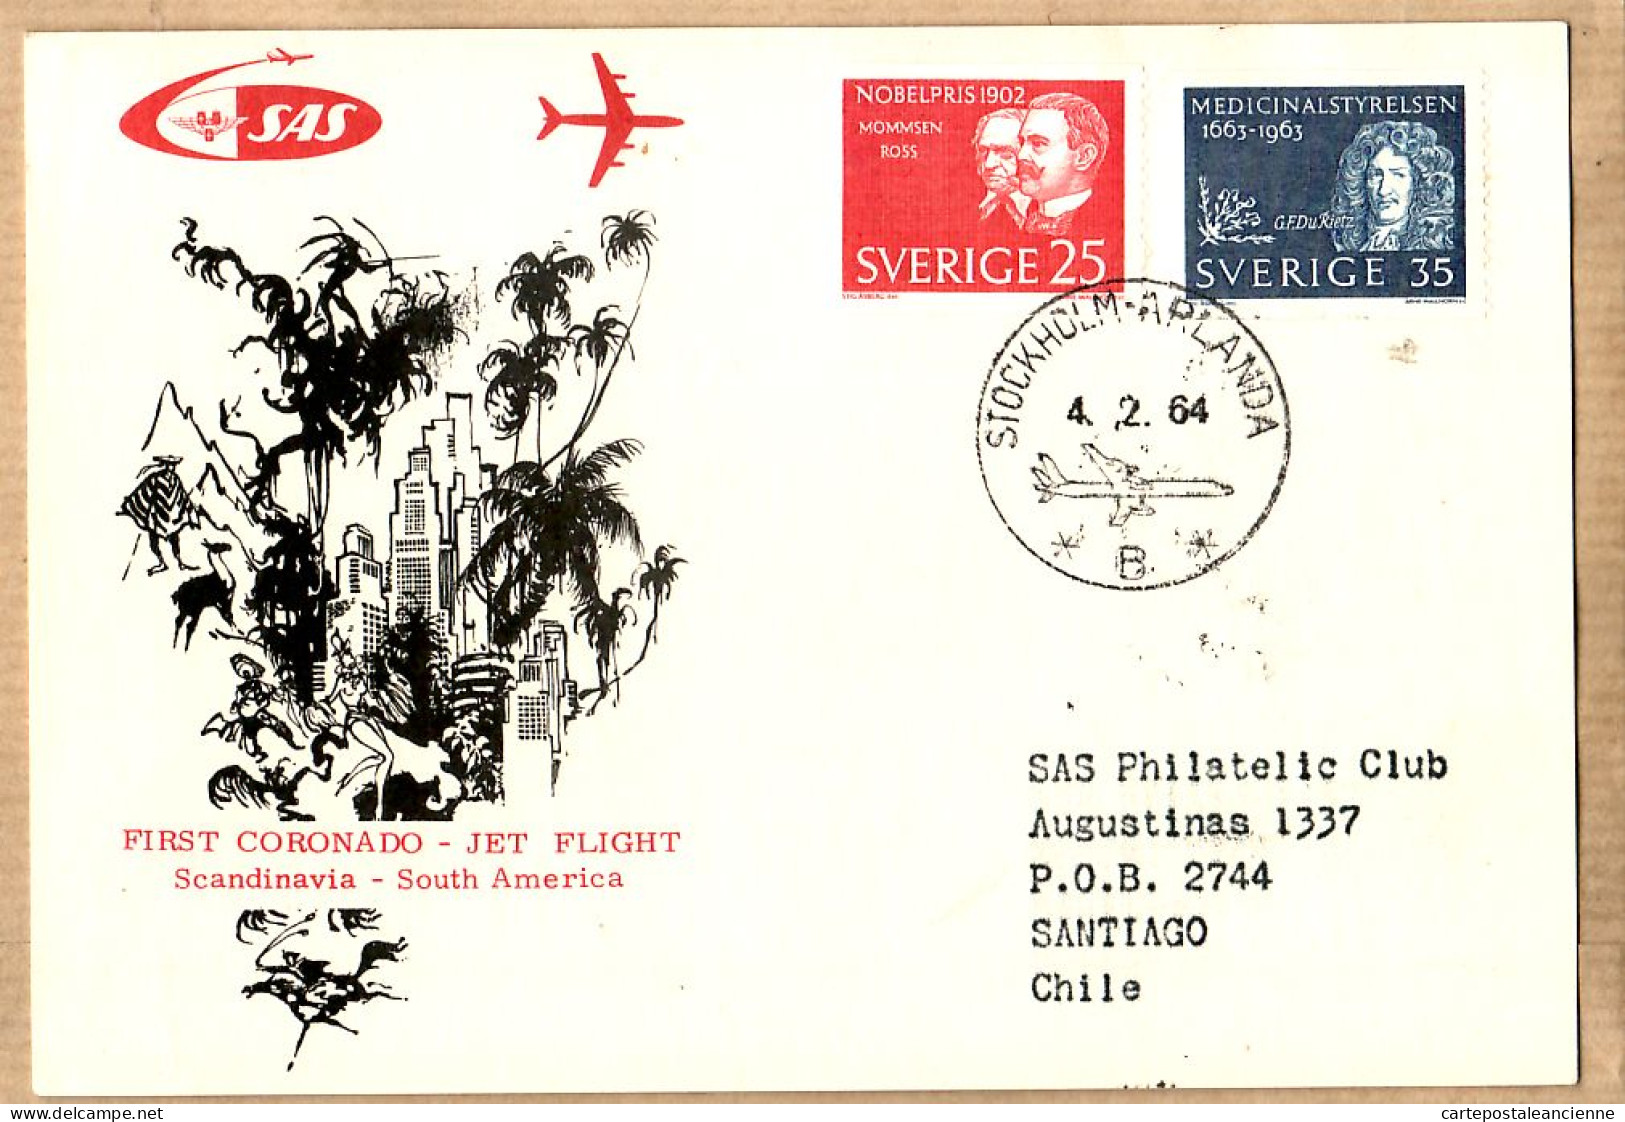 04532 / Sweden First SAS CORONADO Jet Flight Scandinavia SOUTH-AMERICA 04-02-1964 STOCKHOLM ARLANDA SANTIAGO CHILE Cpav - Briefe U. Dokumente